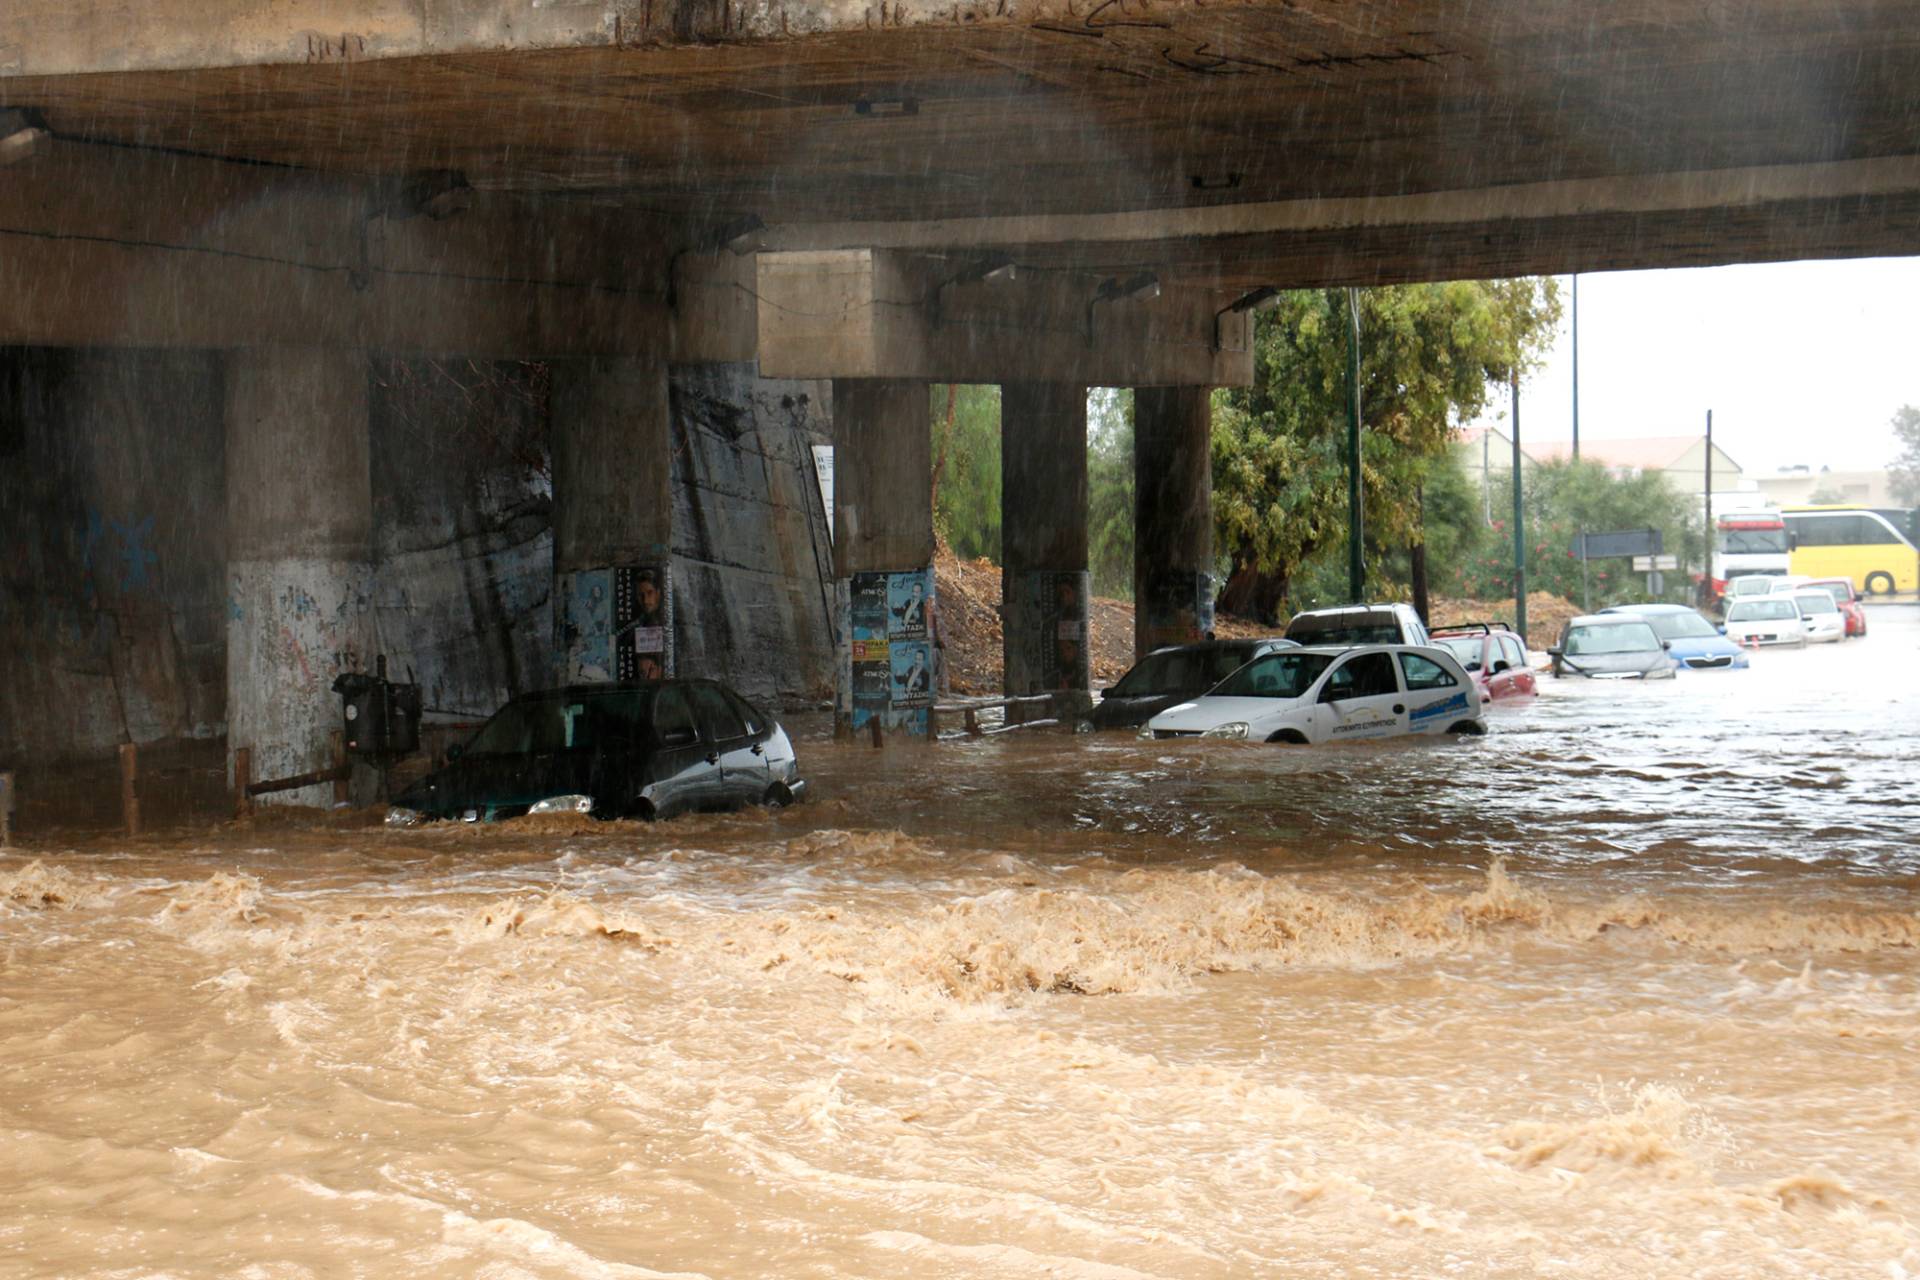 Κρήτη – Κ. Λαγουβάρδος: “Δύσκολο διήμερο με έντονες βροχοπτώσεις – Να λειτουργήσουν συστήματα έγκαιρης προειδοποίησης των πολιτών”